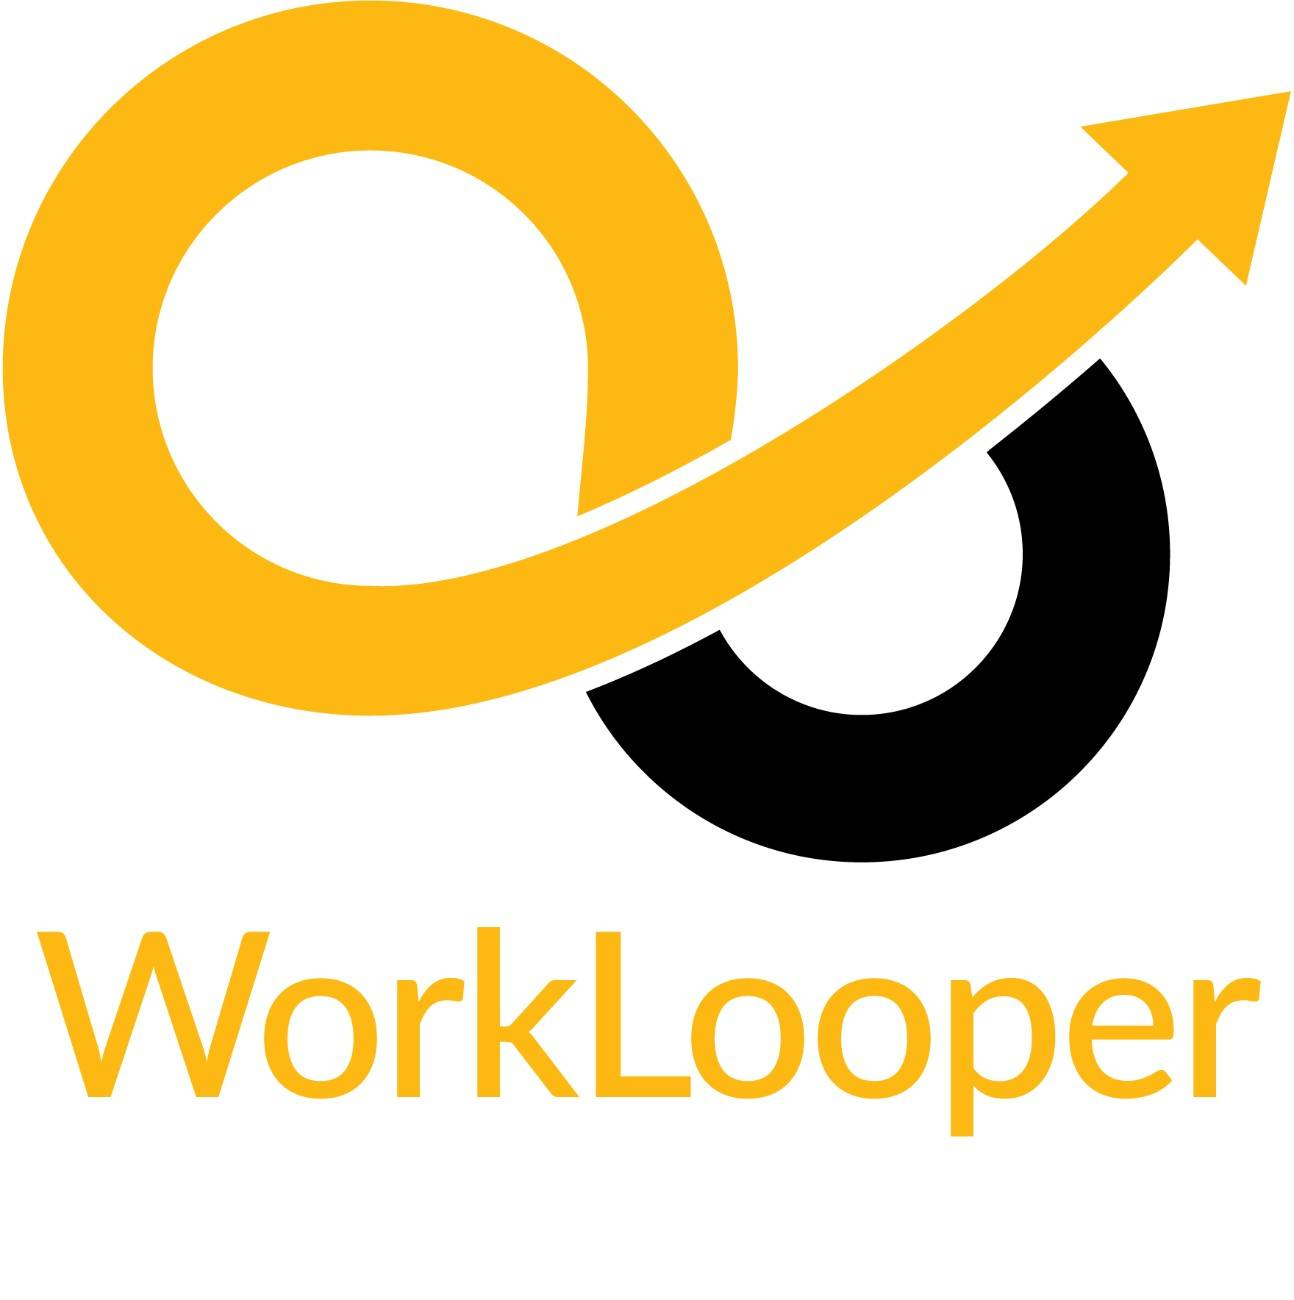 WorkLooper Consultants Profile Picture